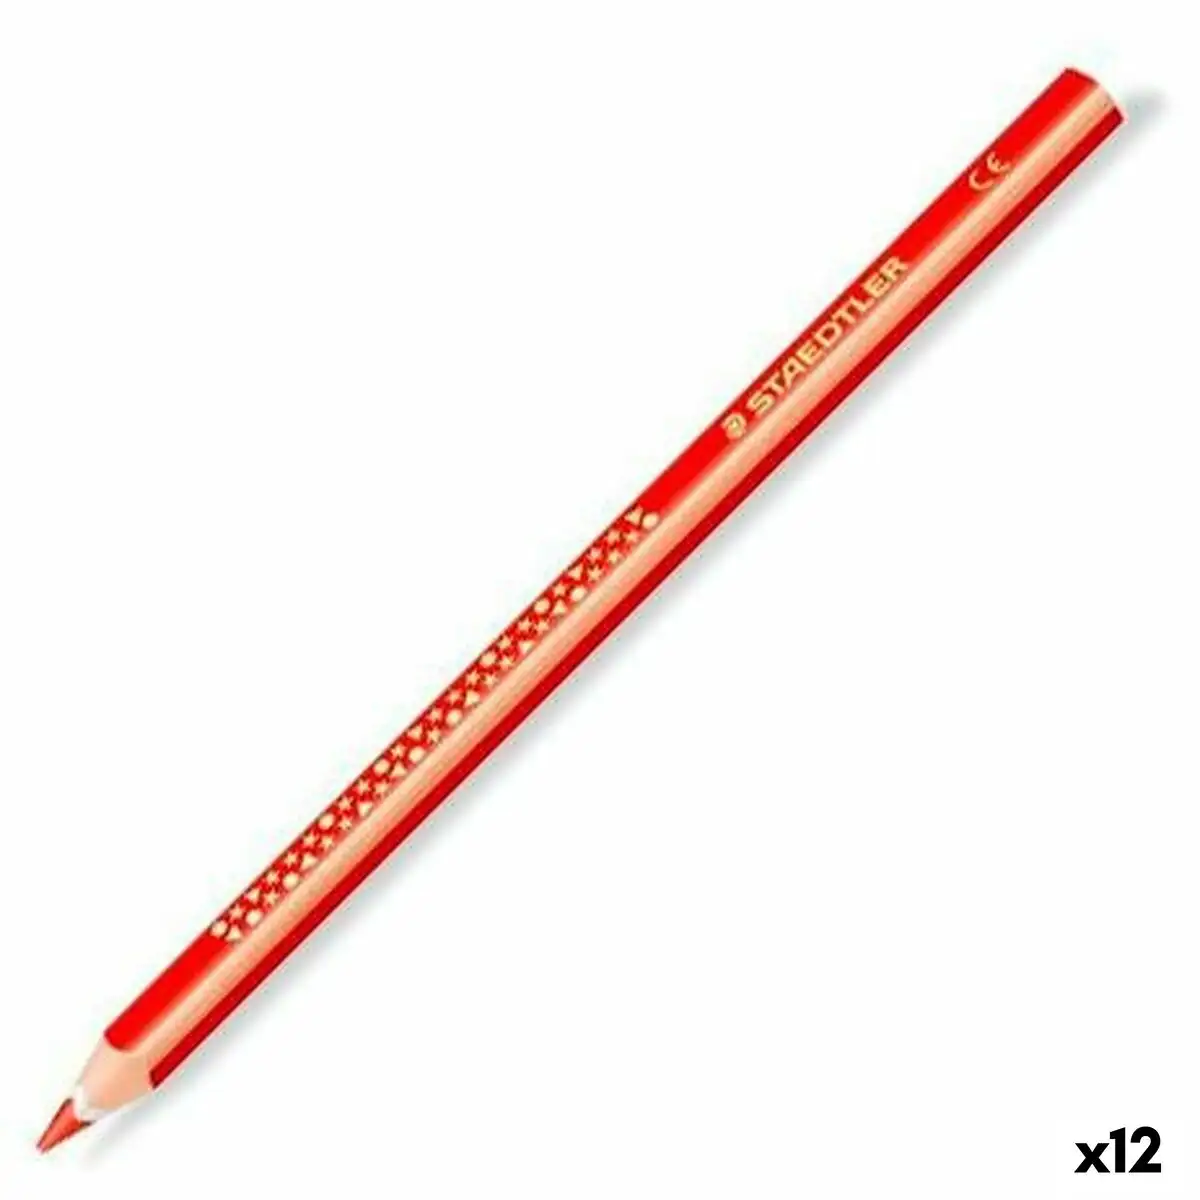 Crayons de couleur staedtler jumbo noris rouge 12 unites _9769. DIAYTAR SENEGAL - Votre Plateforme Shopping, Votre Choix Éclairé. Explorez nos offres et choisissez des articles de qualité qui reflètent votre style et vos valeurs.